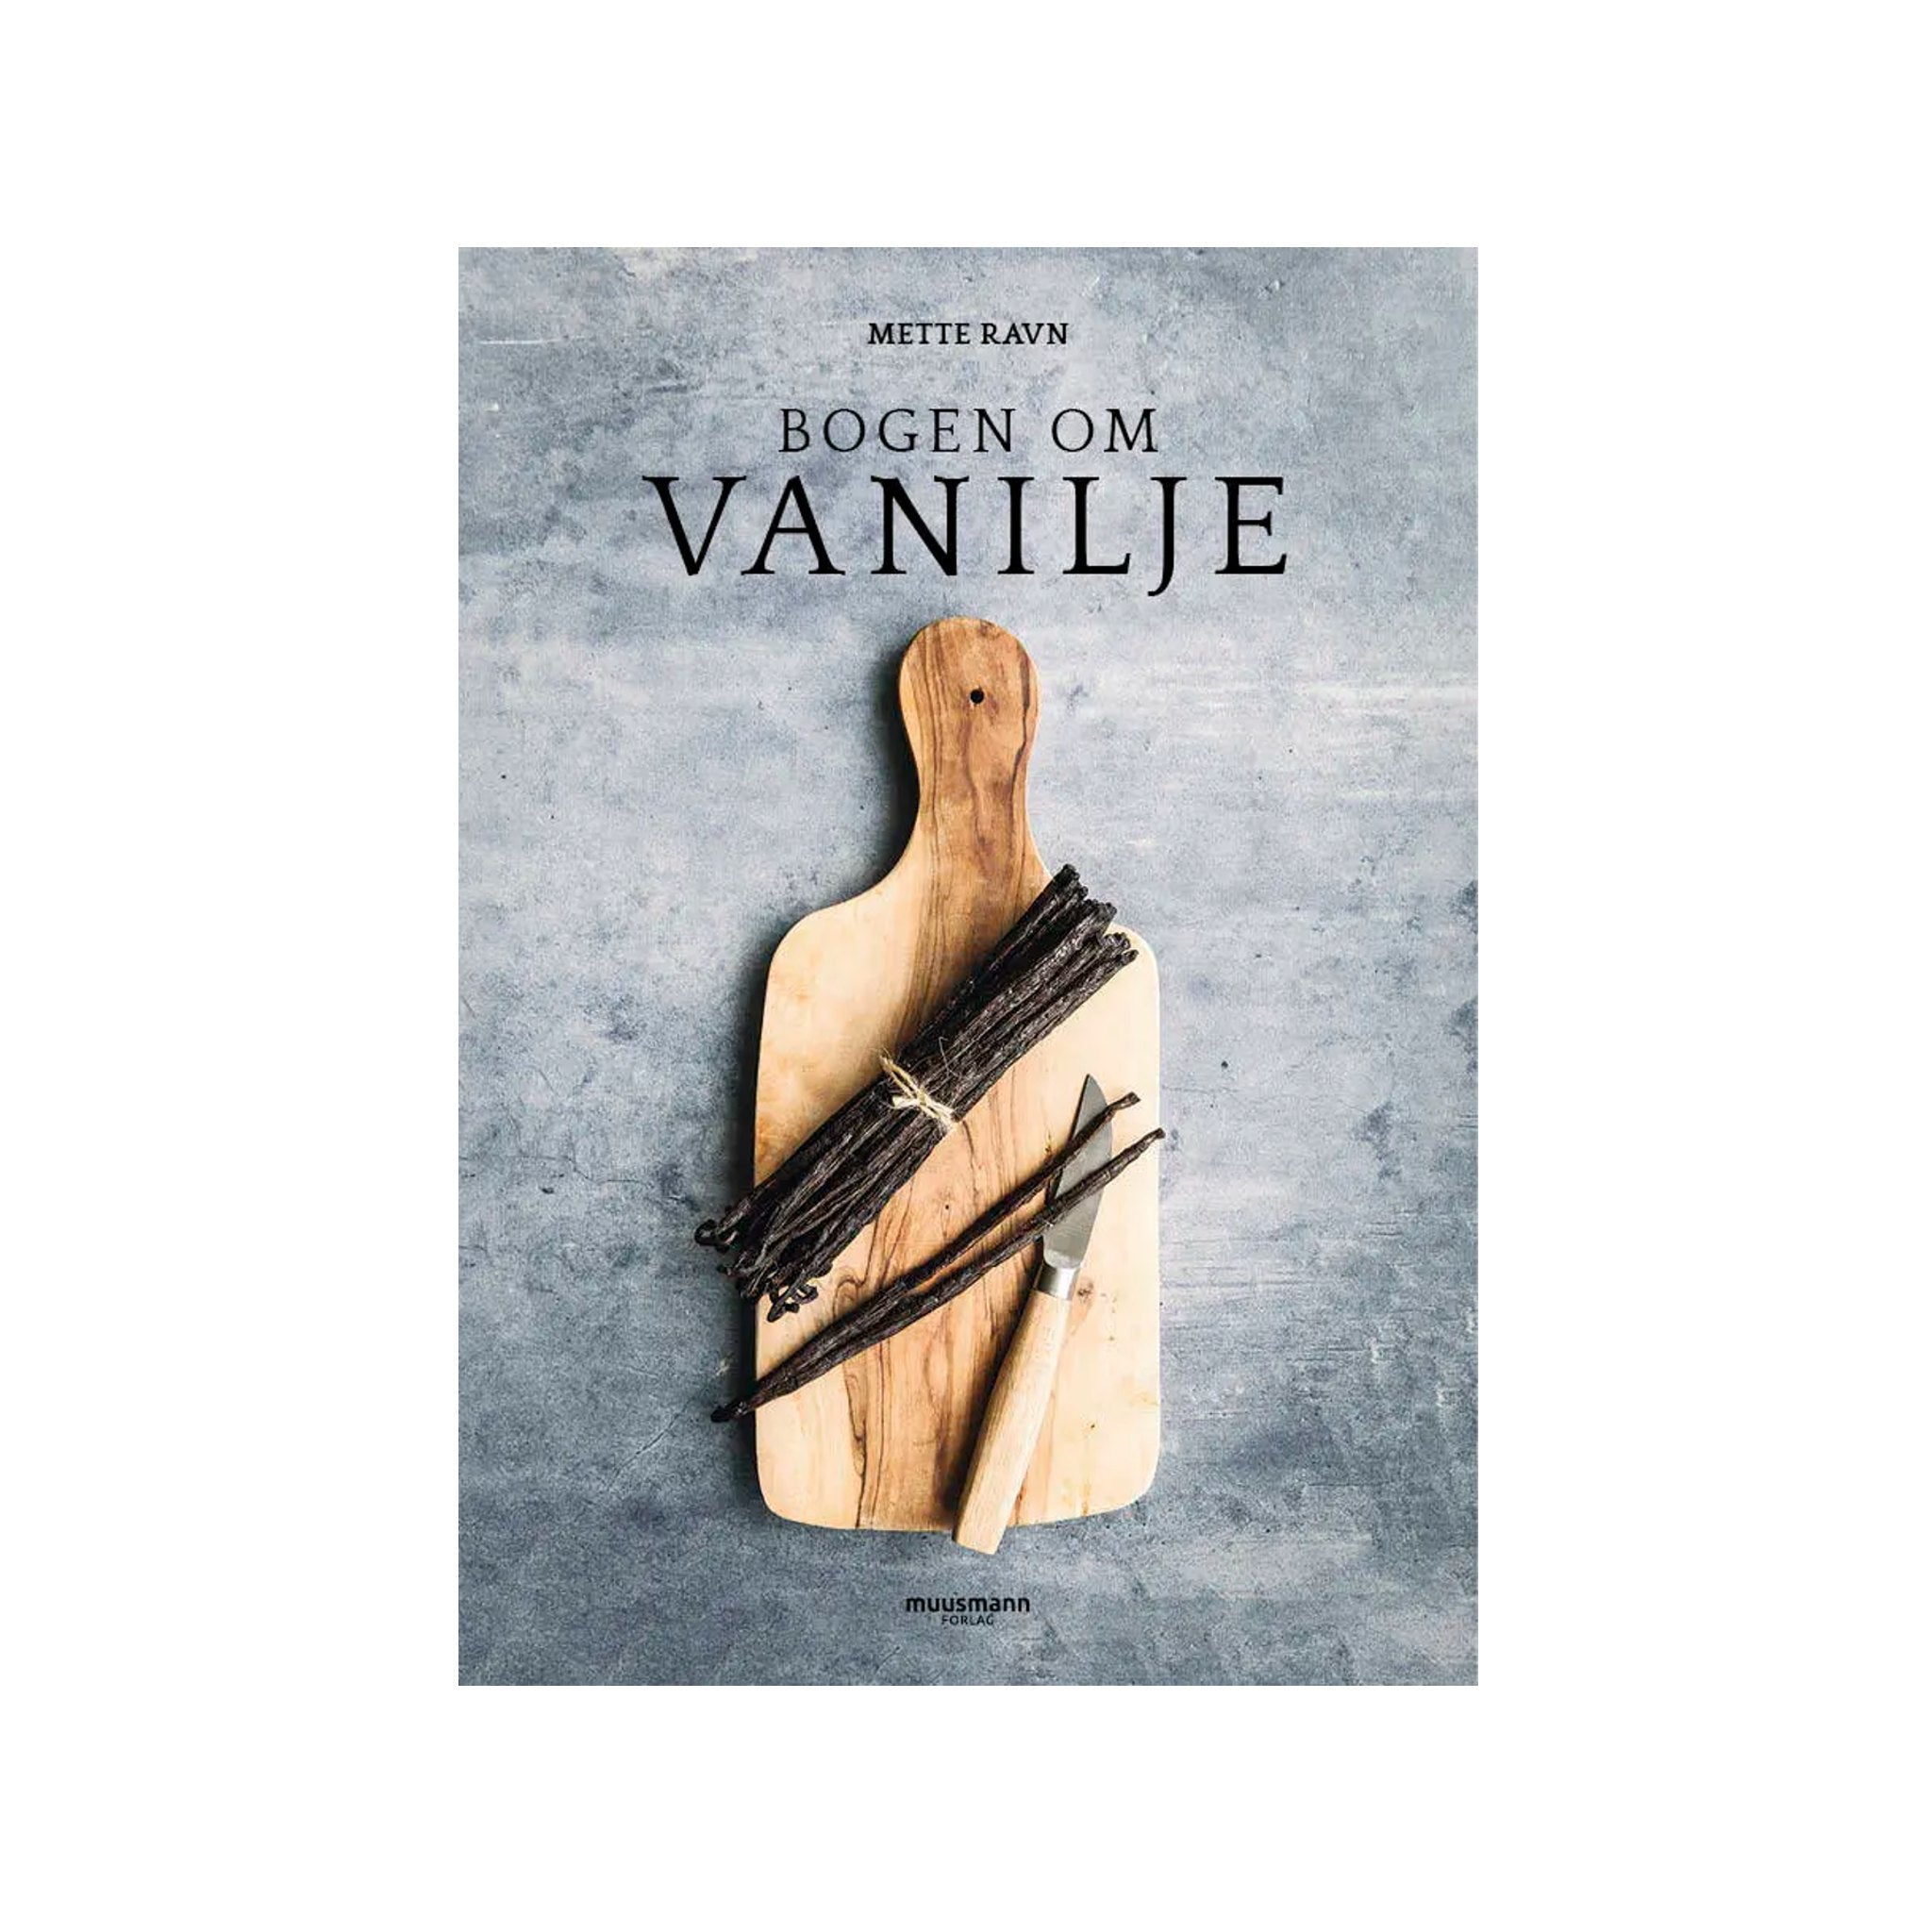 Bogen om vanilje af Mette Ravn, Oliviers & Co